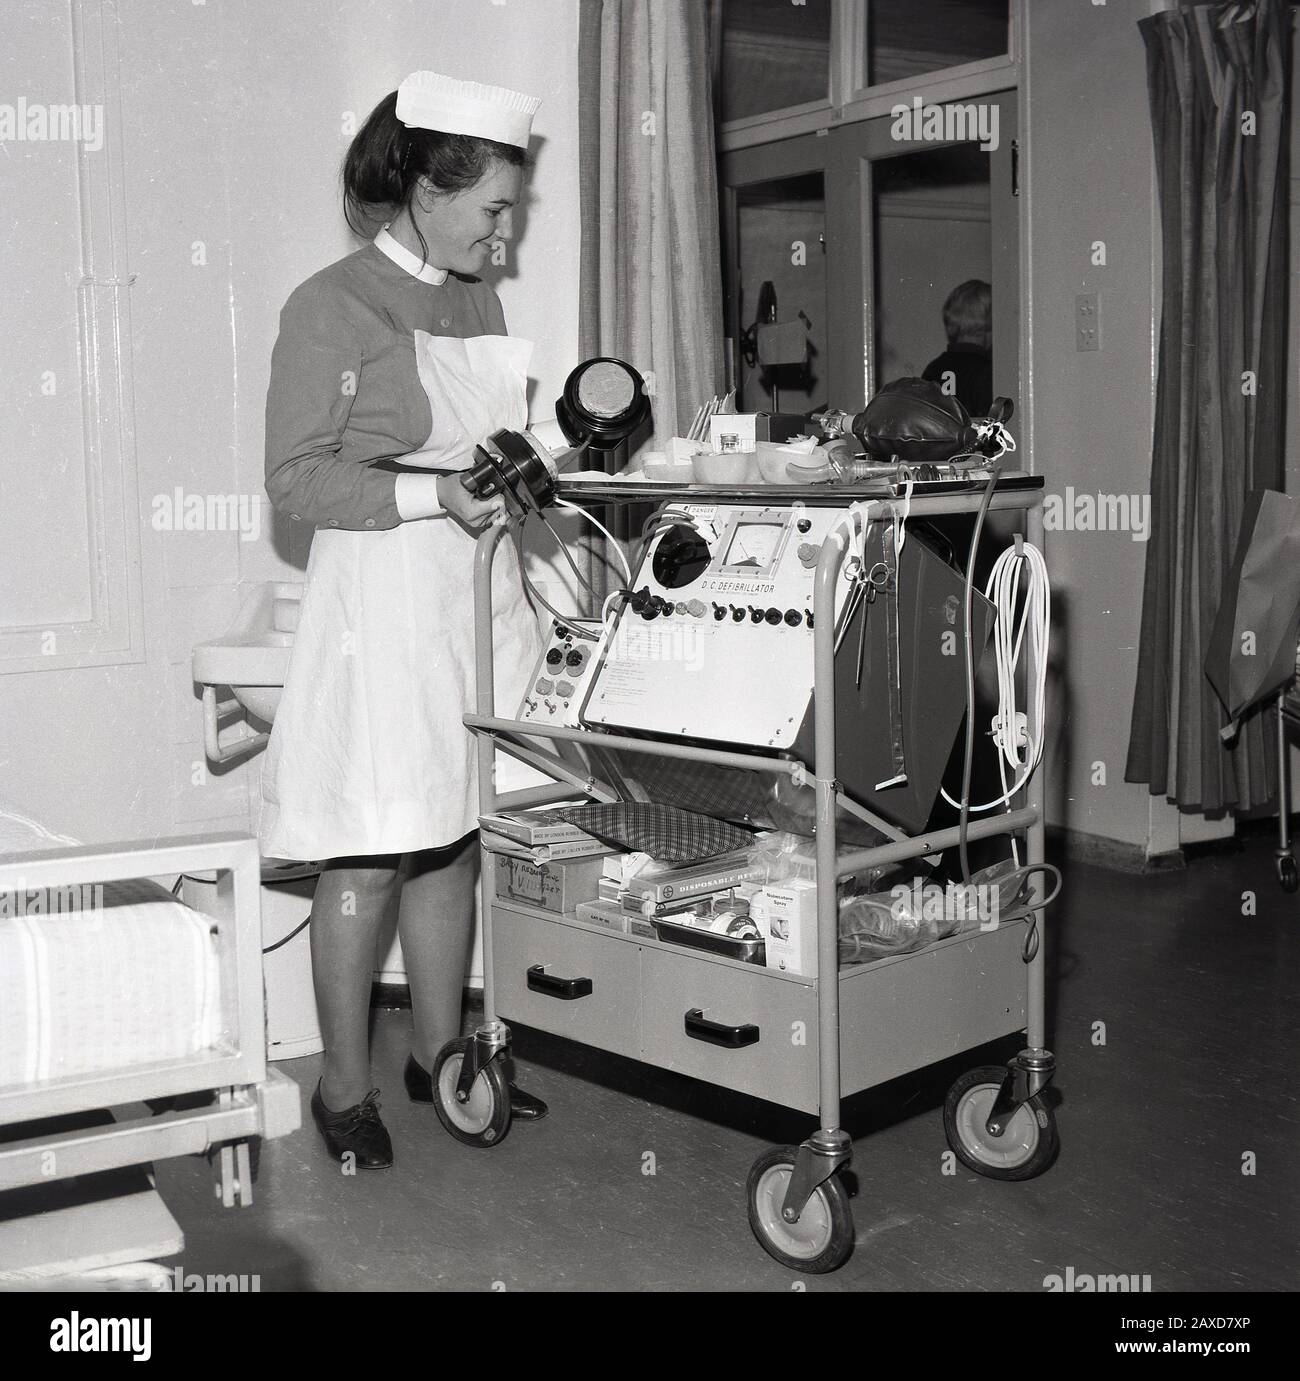 Années 1960, historique, infirmière dans un service hospitalier avec un chariot avec un défibrillateur DC, un dispositif électronique qui est utilisé pour ranimer le cœur d'un patient après une urgence cardiaque, South London, Angleterre, Royaume-Uni. Banque D'Images